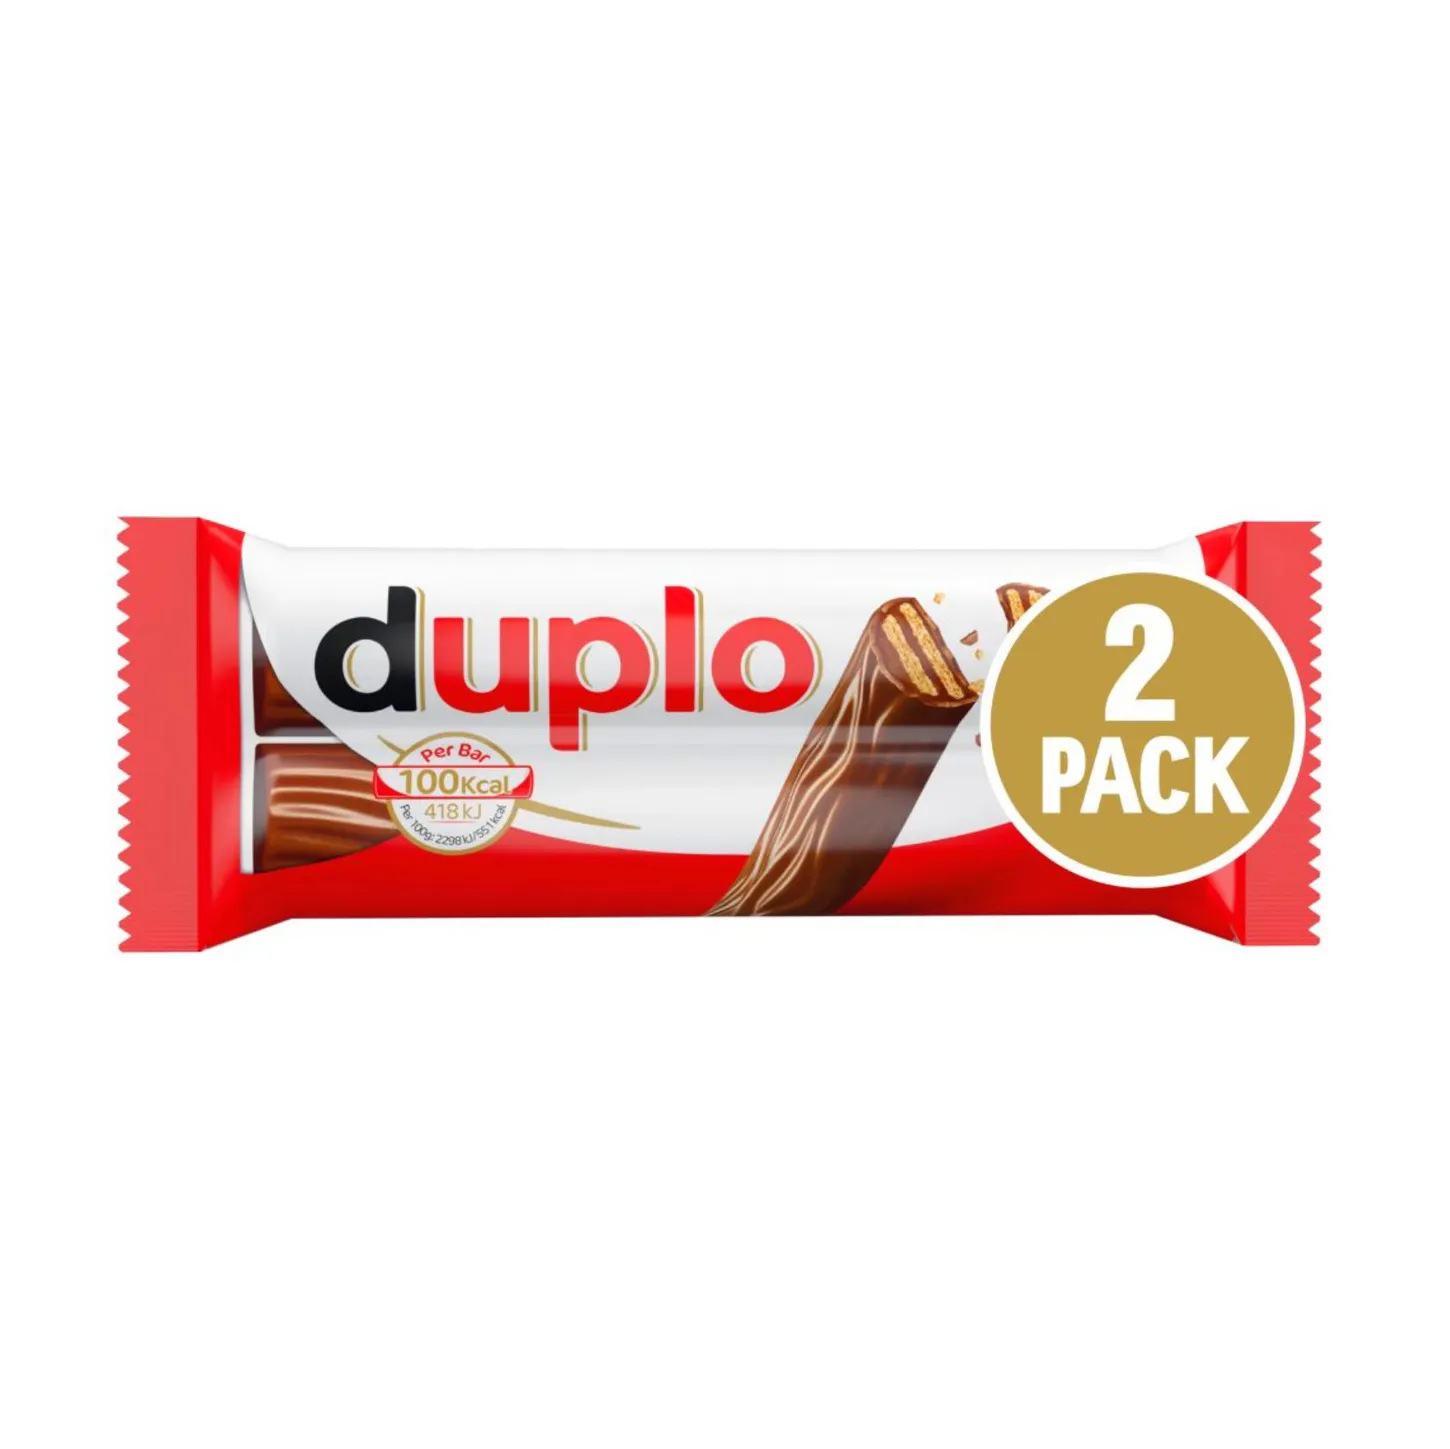 New Ferrero Duplo Chocnut Hazelnut Chocolate 130 Grams for Sale